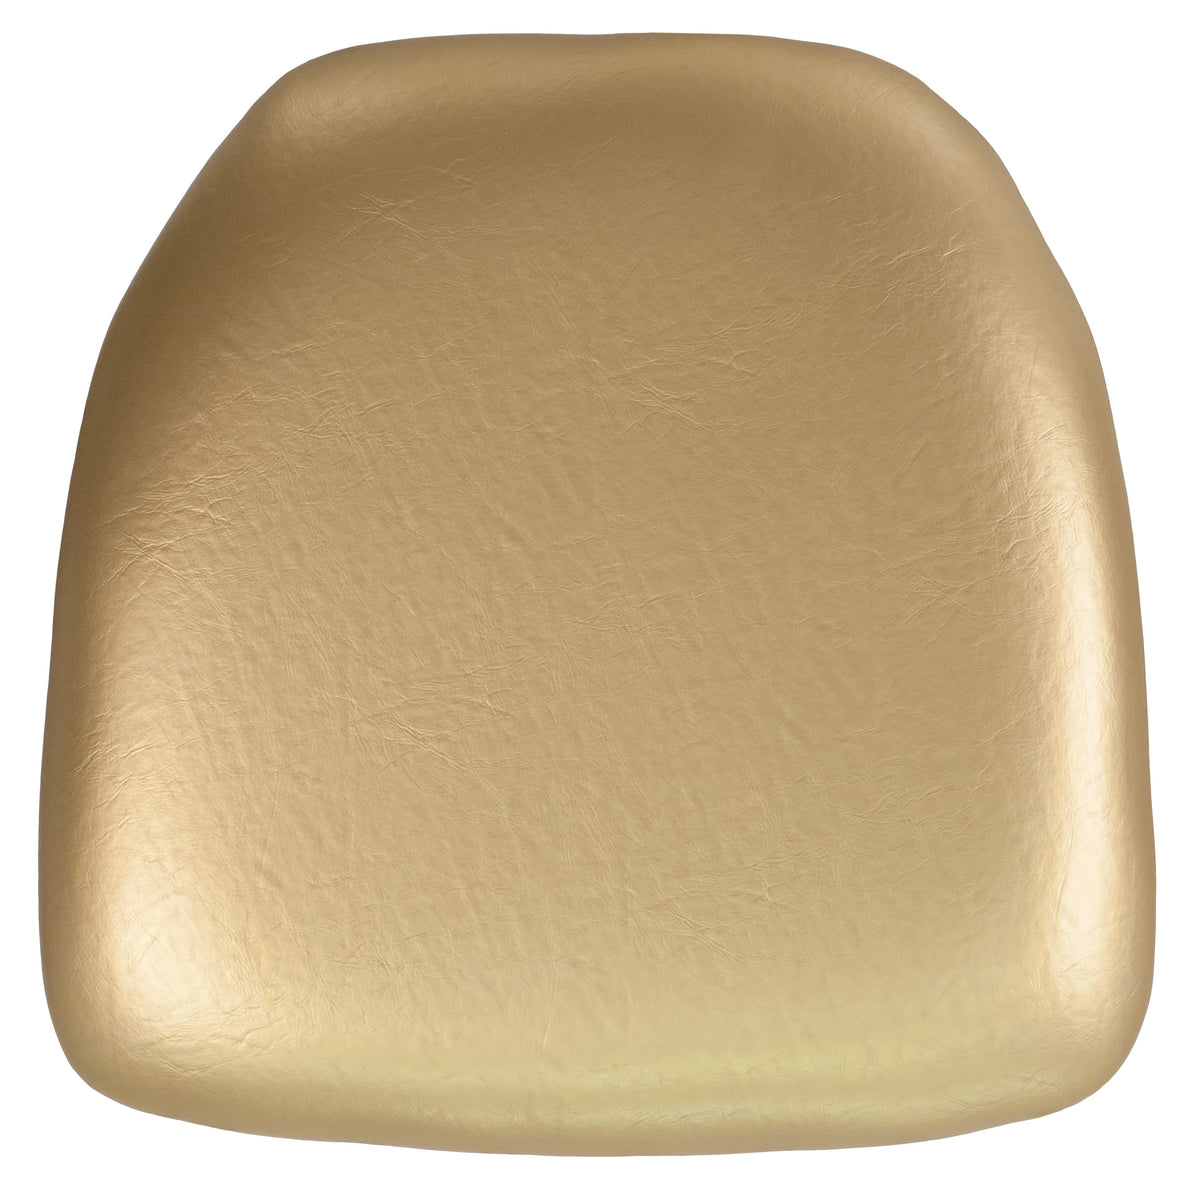 Gold Vinyl |#| Hard Gold Vinyl Chiavari Chair Cushion - Event Accessories - Chair Cushions